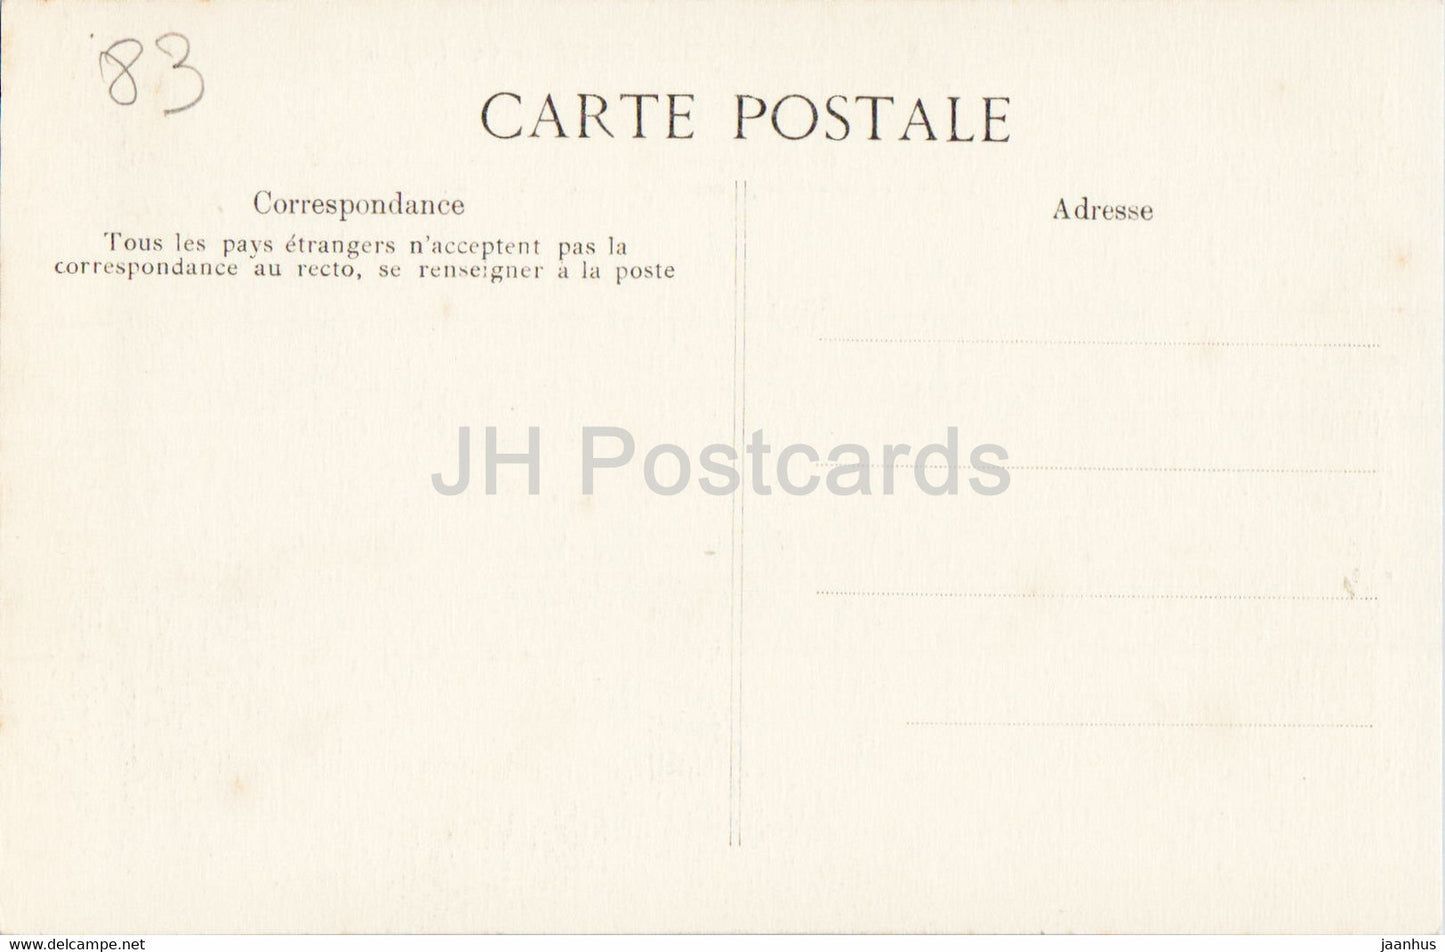 Abbaye du Thoronet - Les Cachots - 8 - carte postale ancienne - France - inutilisée